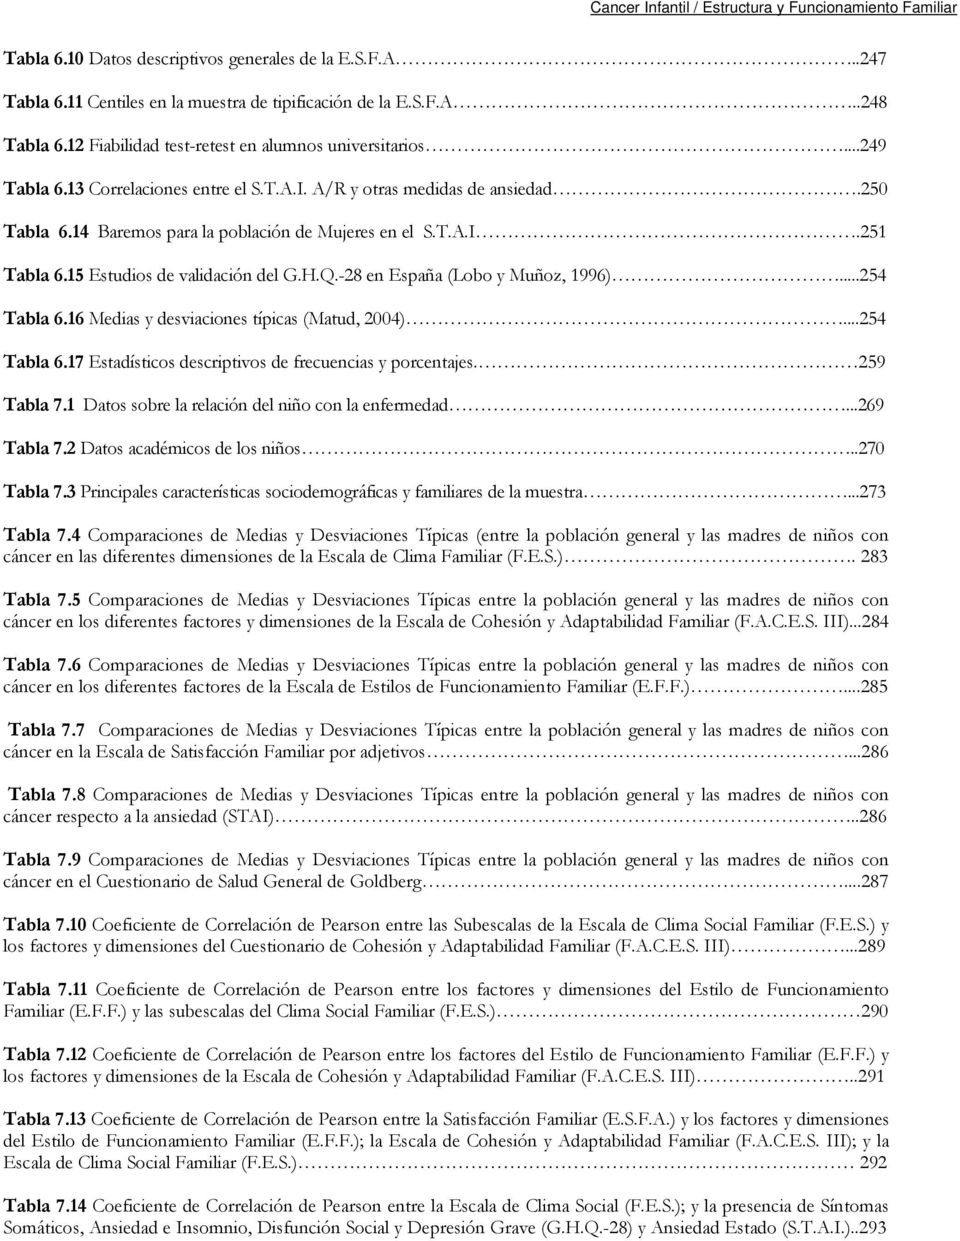 -28 en España (Lobo y Muñoz, 1996)...254 Tabla 6.16 Medias y desviaciones típicas (Matud, 2004)...254 Tabla 6.17 Estadísticos descriptivos de frecuencias y porcentajes. 259 Tabla 7.